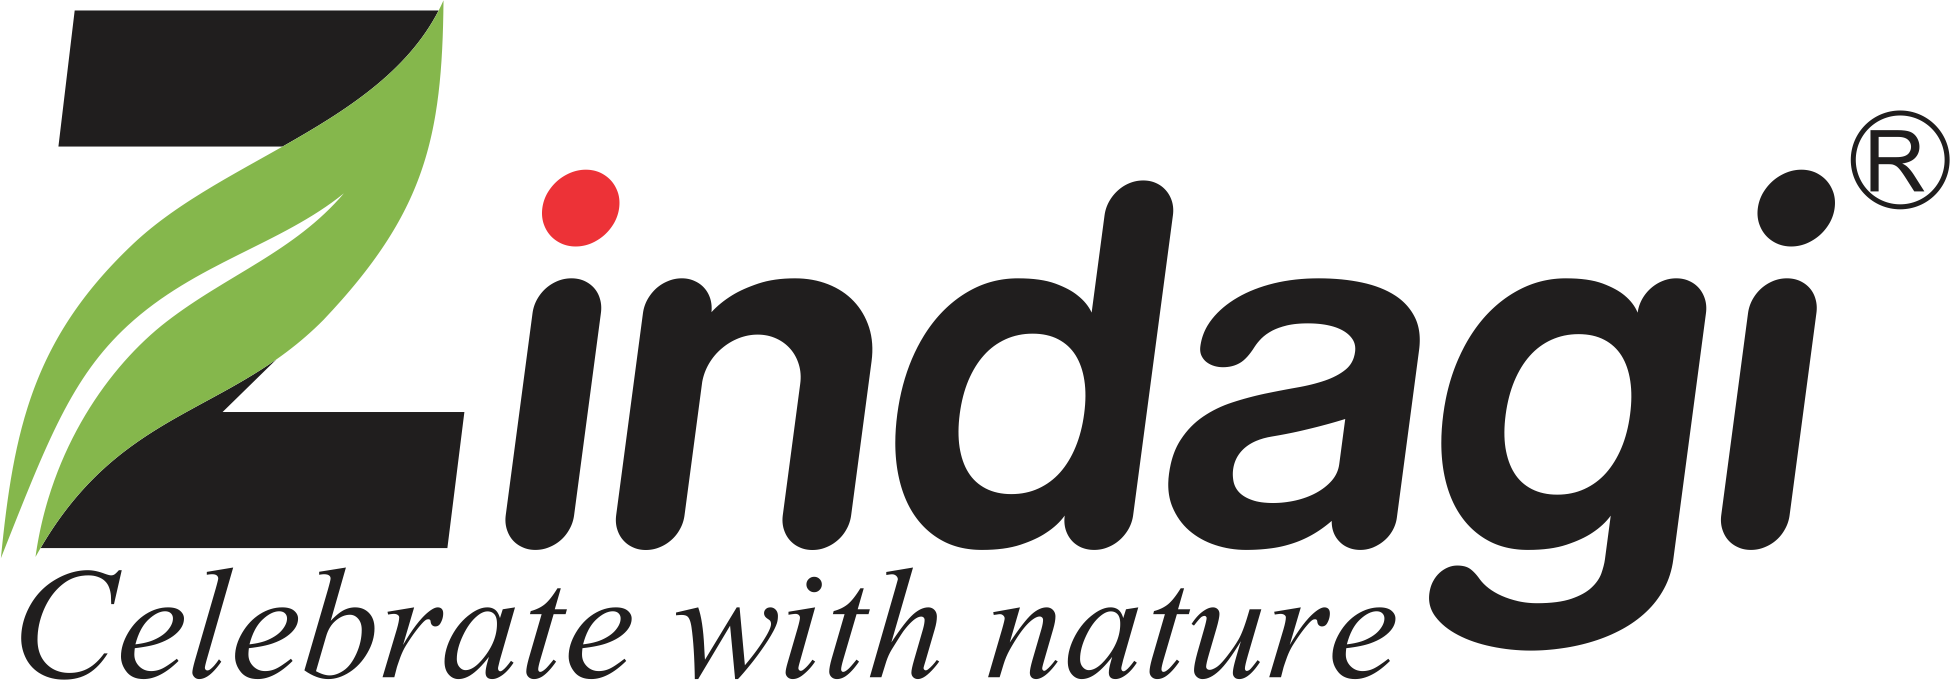 Zindagi – Celebrate With Nature